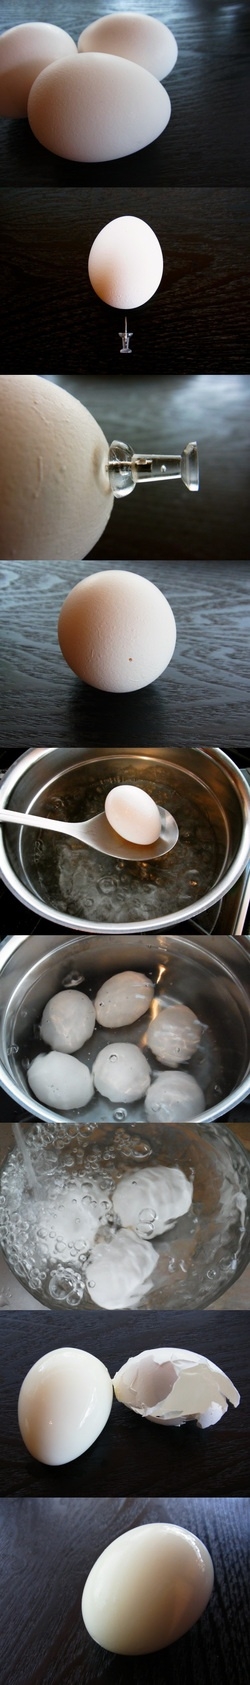 Простой приемчик чтобы вареные яйца чистились за секунду.